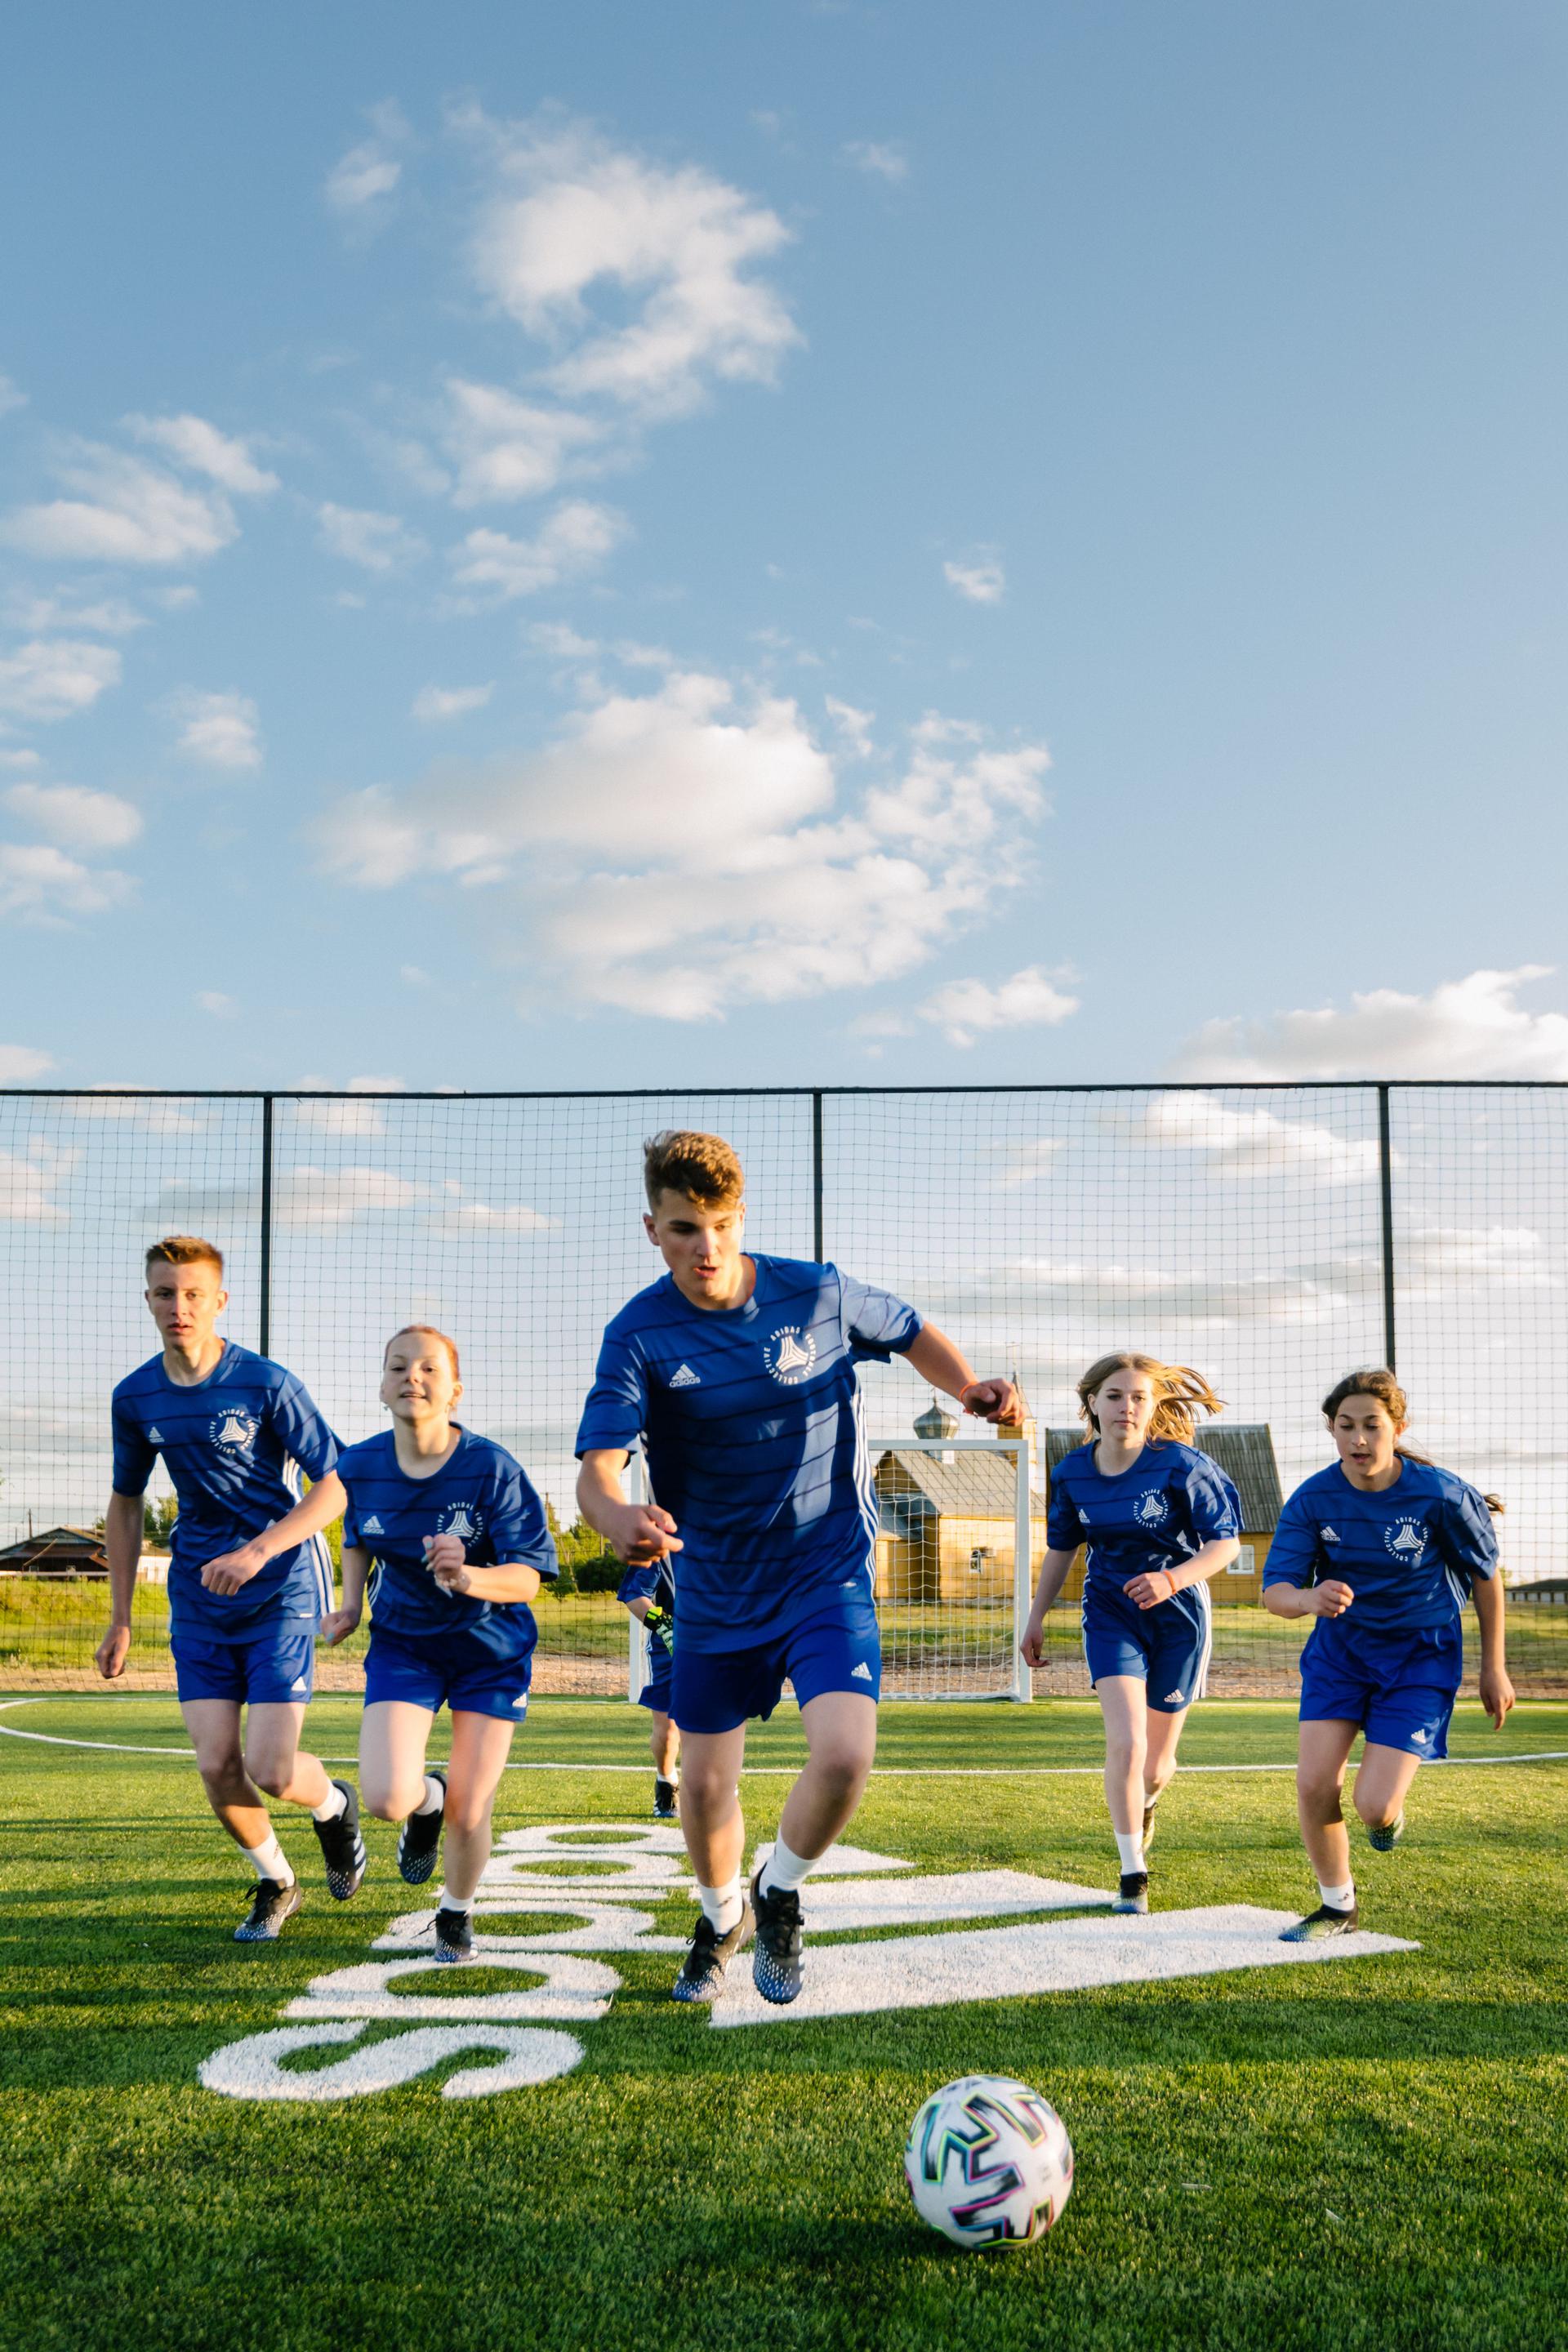 adidas представляет кампанию к ЕВРО-2020 и объявляет о старте социального проекта adidas Football Collective со строительством футбольных полей в регионах России